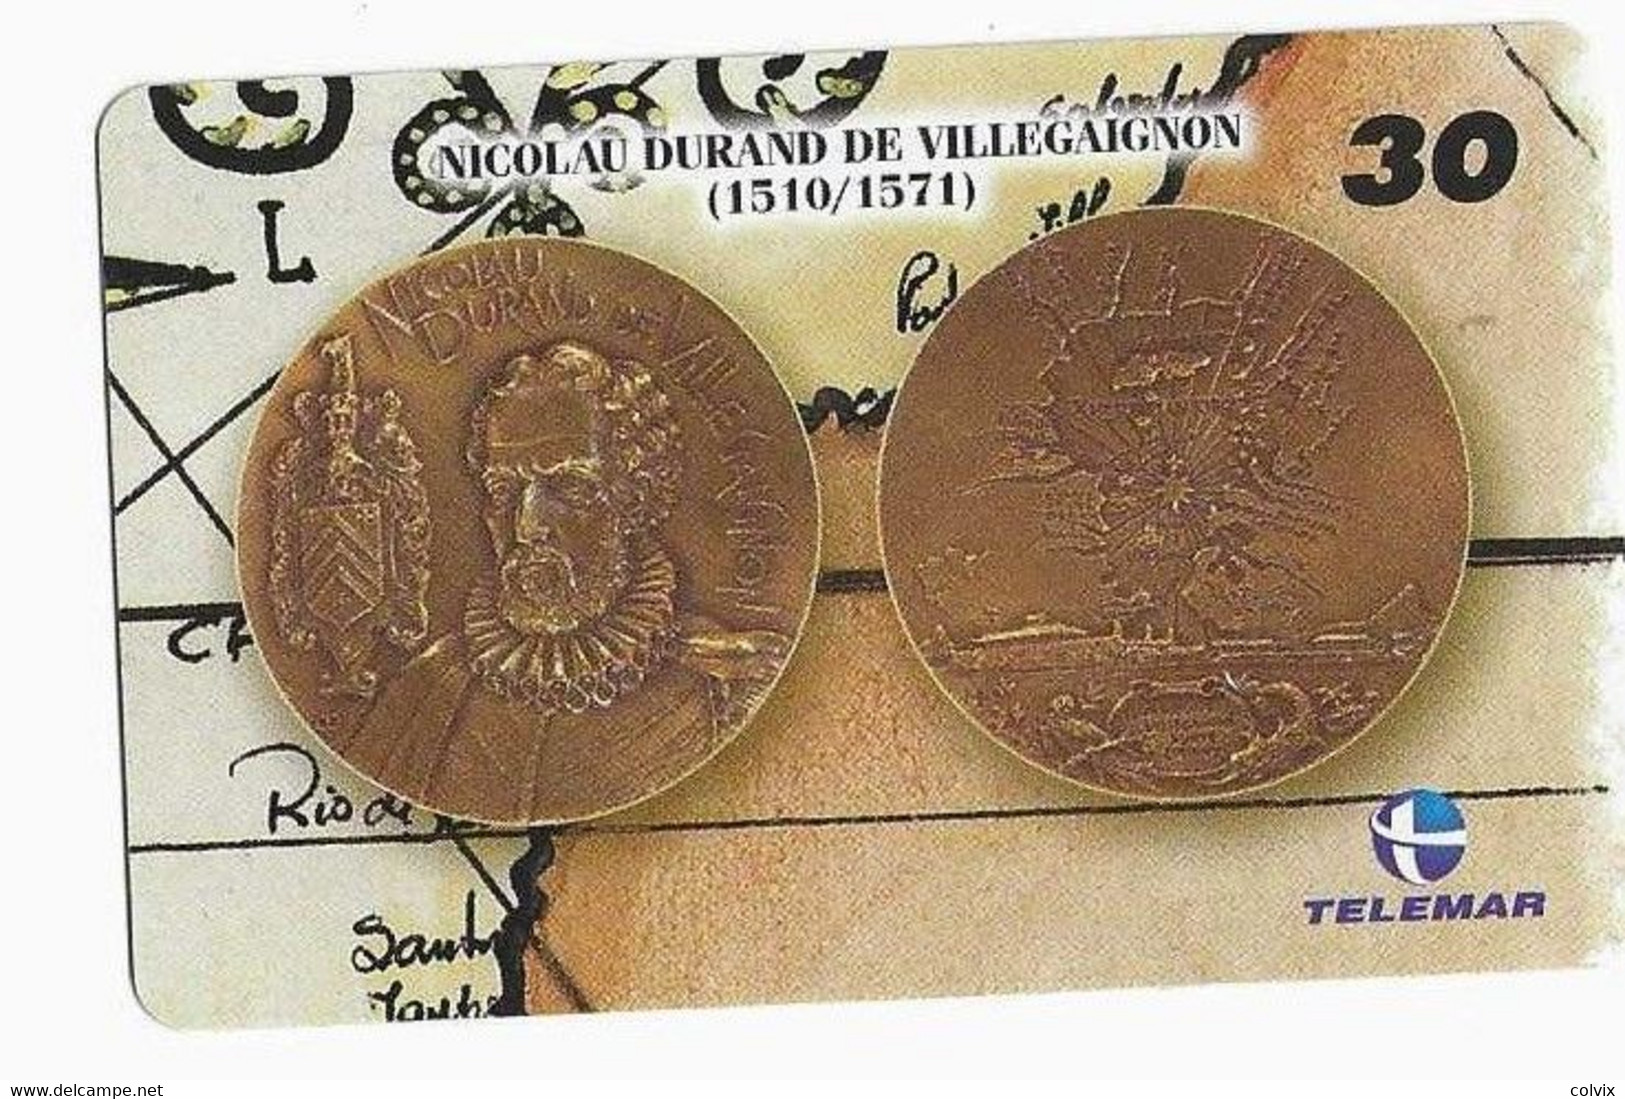 BRESIL TELECARTE MONNAIE NICOLAU DURAND DE VILLEGAIGNON - Sellos & Monedas